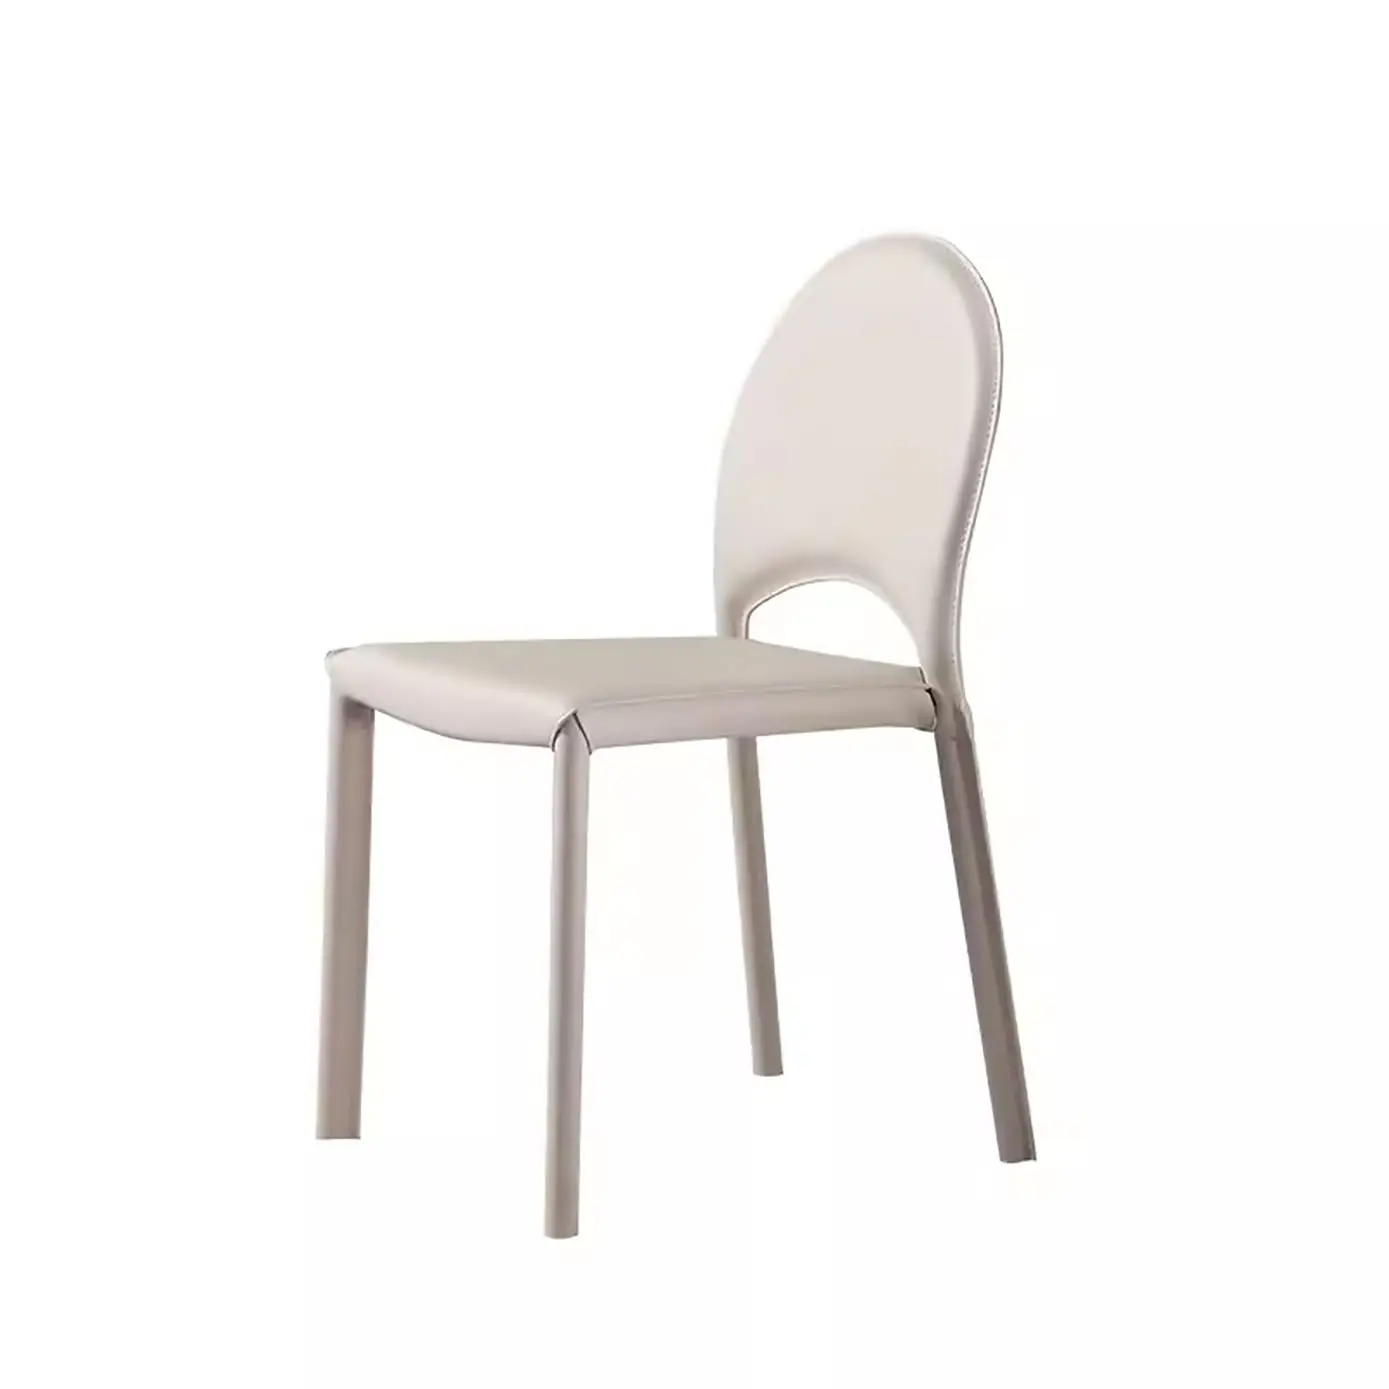 Французский кремовый стул для кемпинга итальянский минималистский стул с спинкой небольшой дом обеденный стол белое седло кожаное кресло